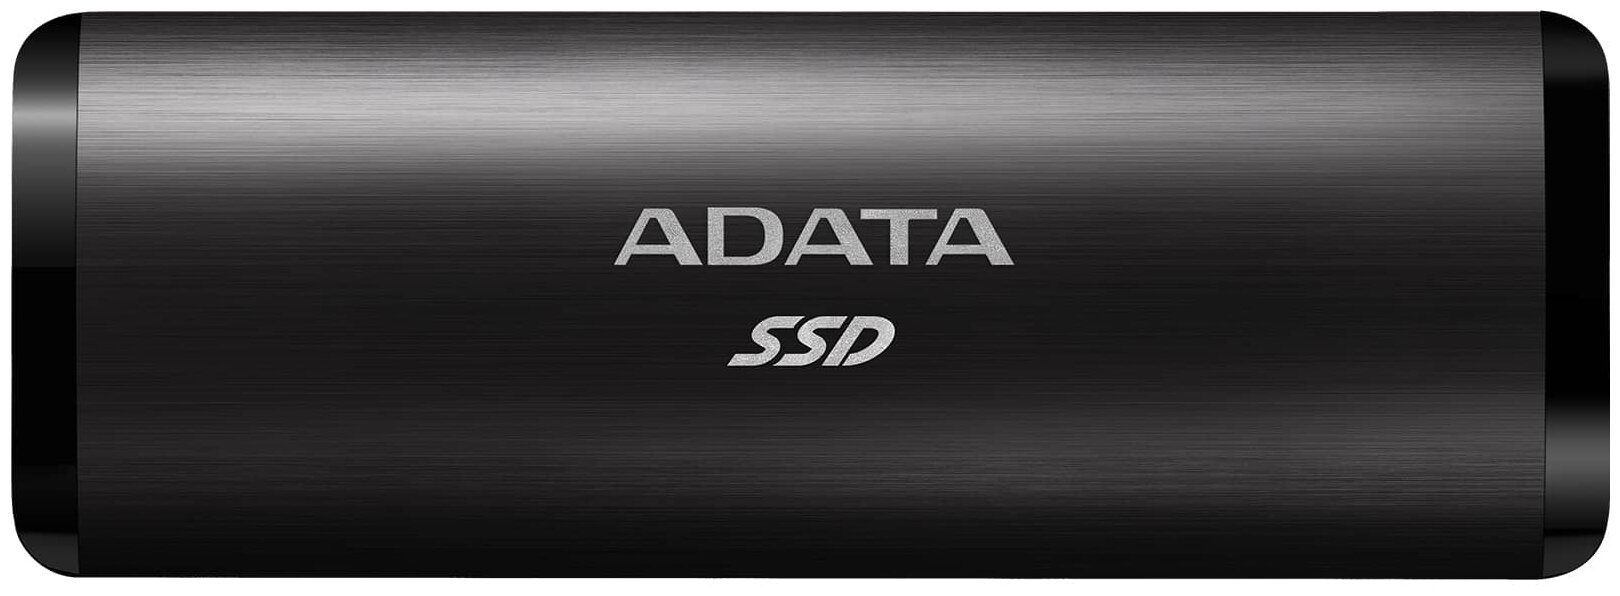 Внешний SSD накопитель A-DATA SE760, 2048GB накопитель ssd hikvision e1000 series 1024gb hs ssd e1000 1024g